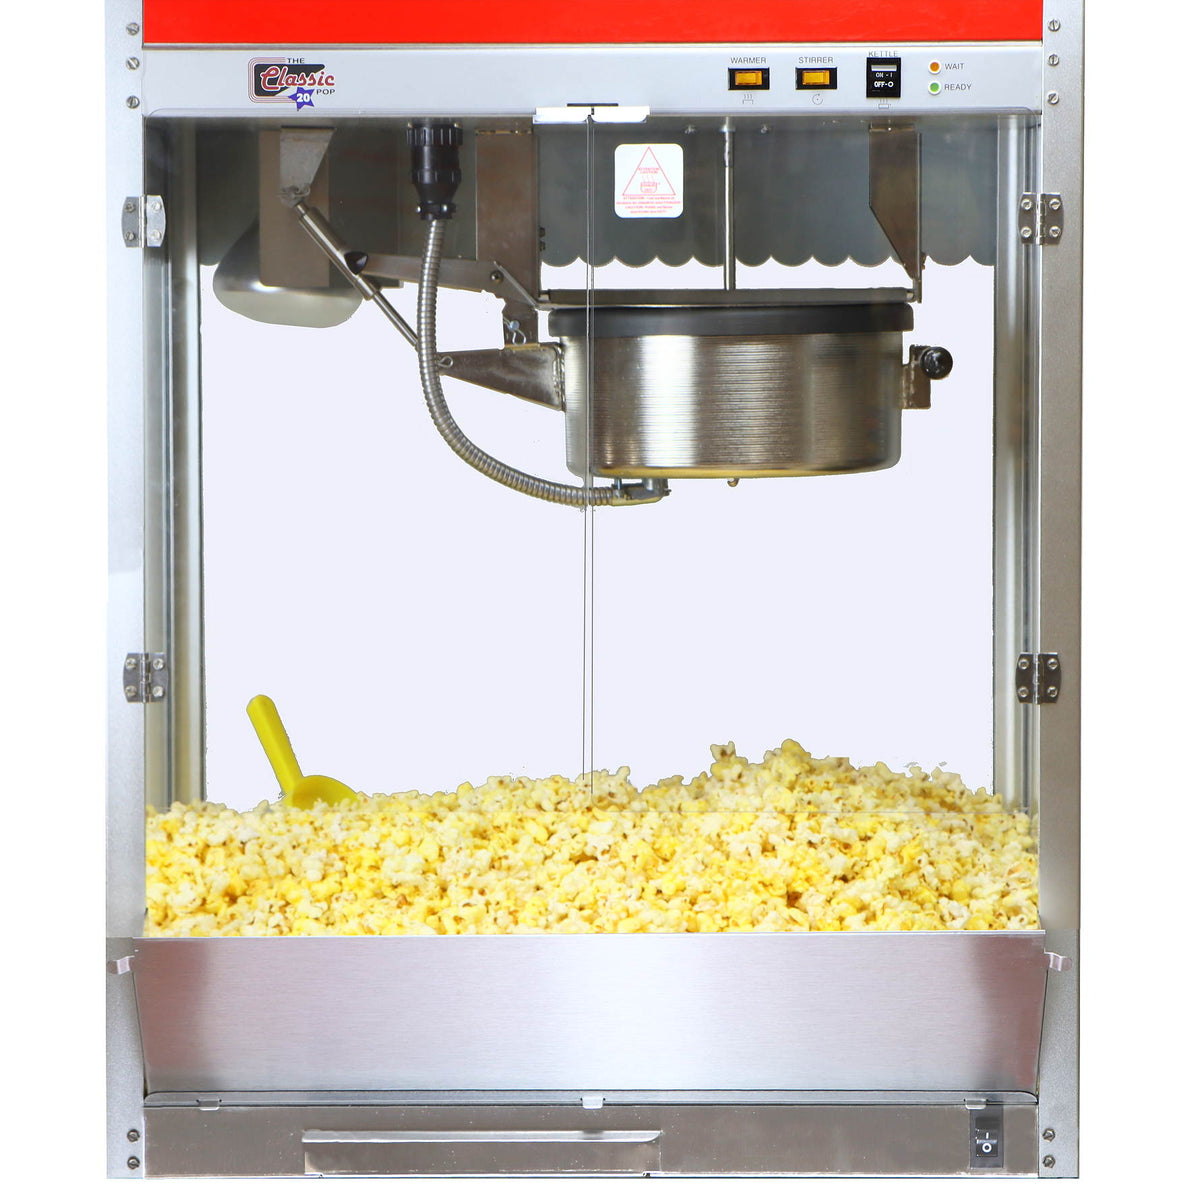 Butter Popcorn Making Machine, 500.0 grams per batch